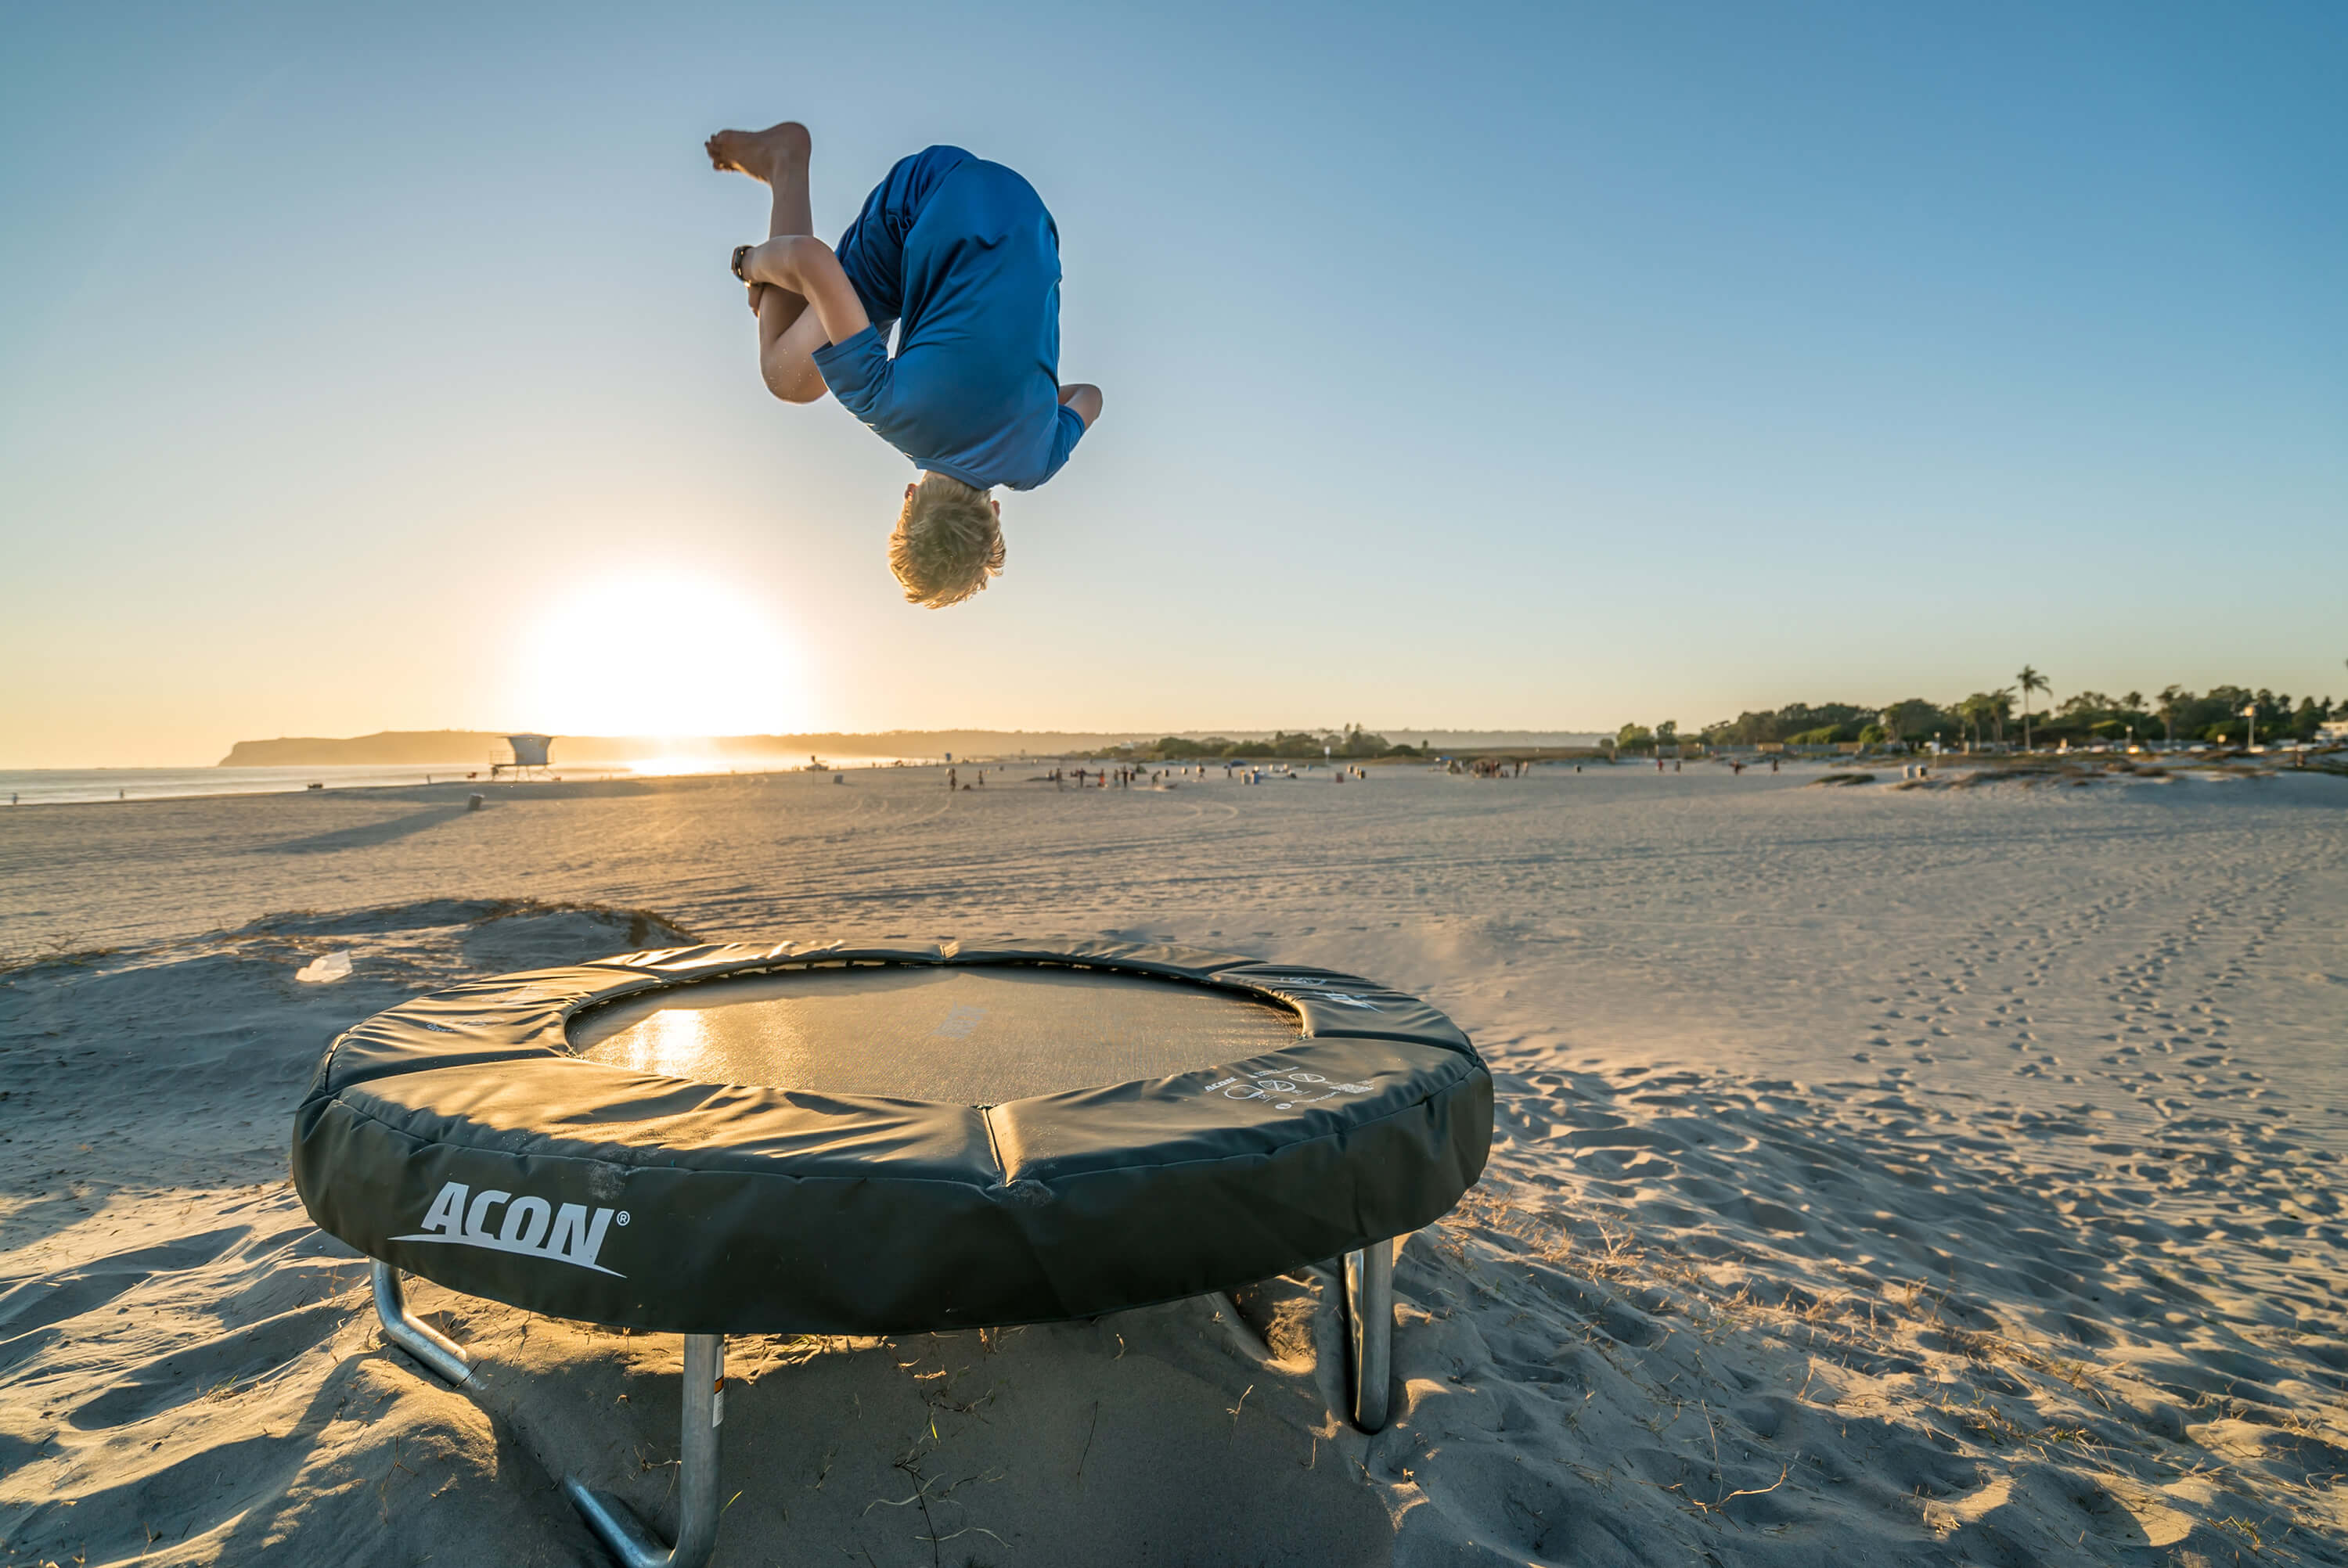 A boy jumping on a trampoline in a seaside landscape.